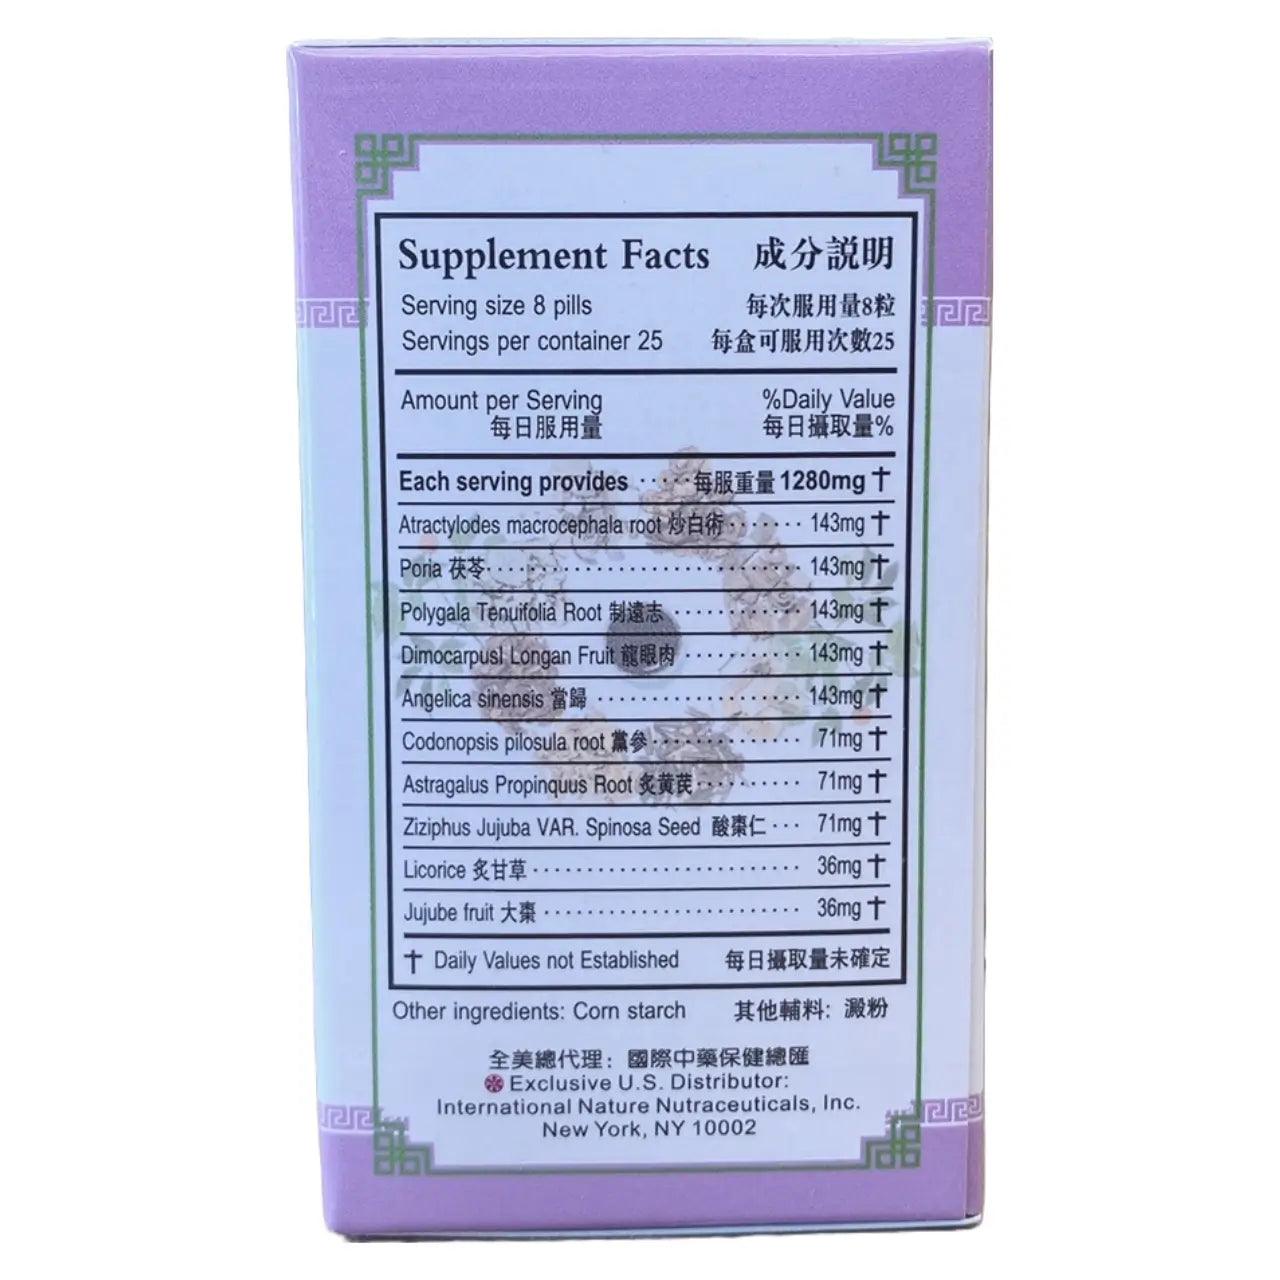 Women's Nourishing Yin Teapills, Gui Pi Wan 160mg (200 Pills) - Buy at New Green Nutrition